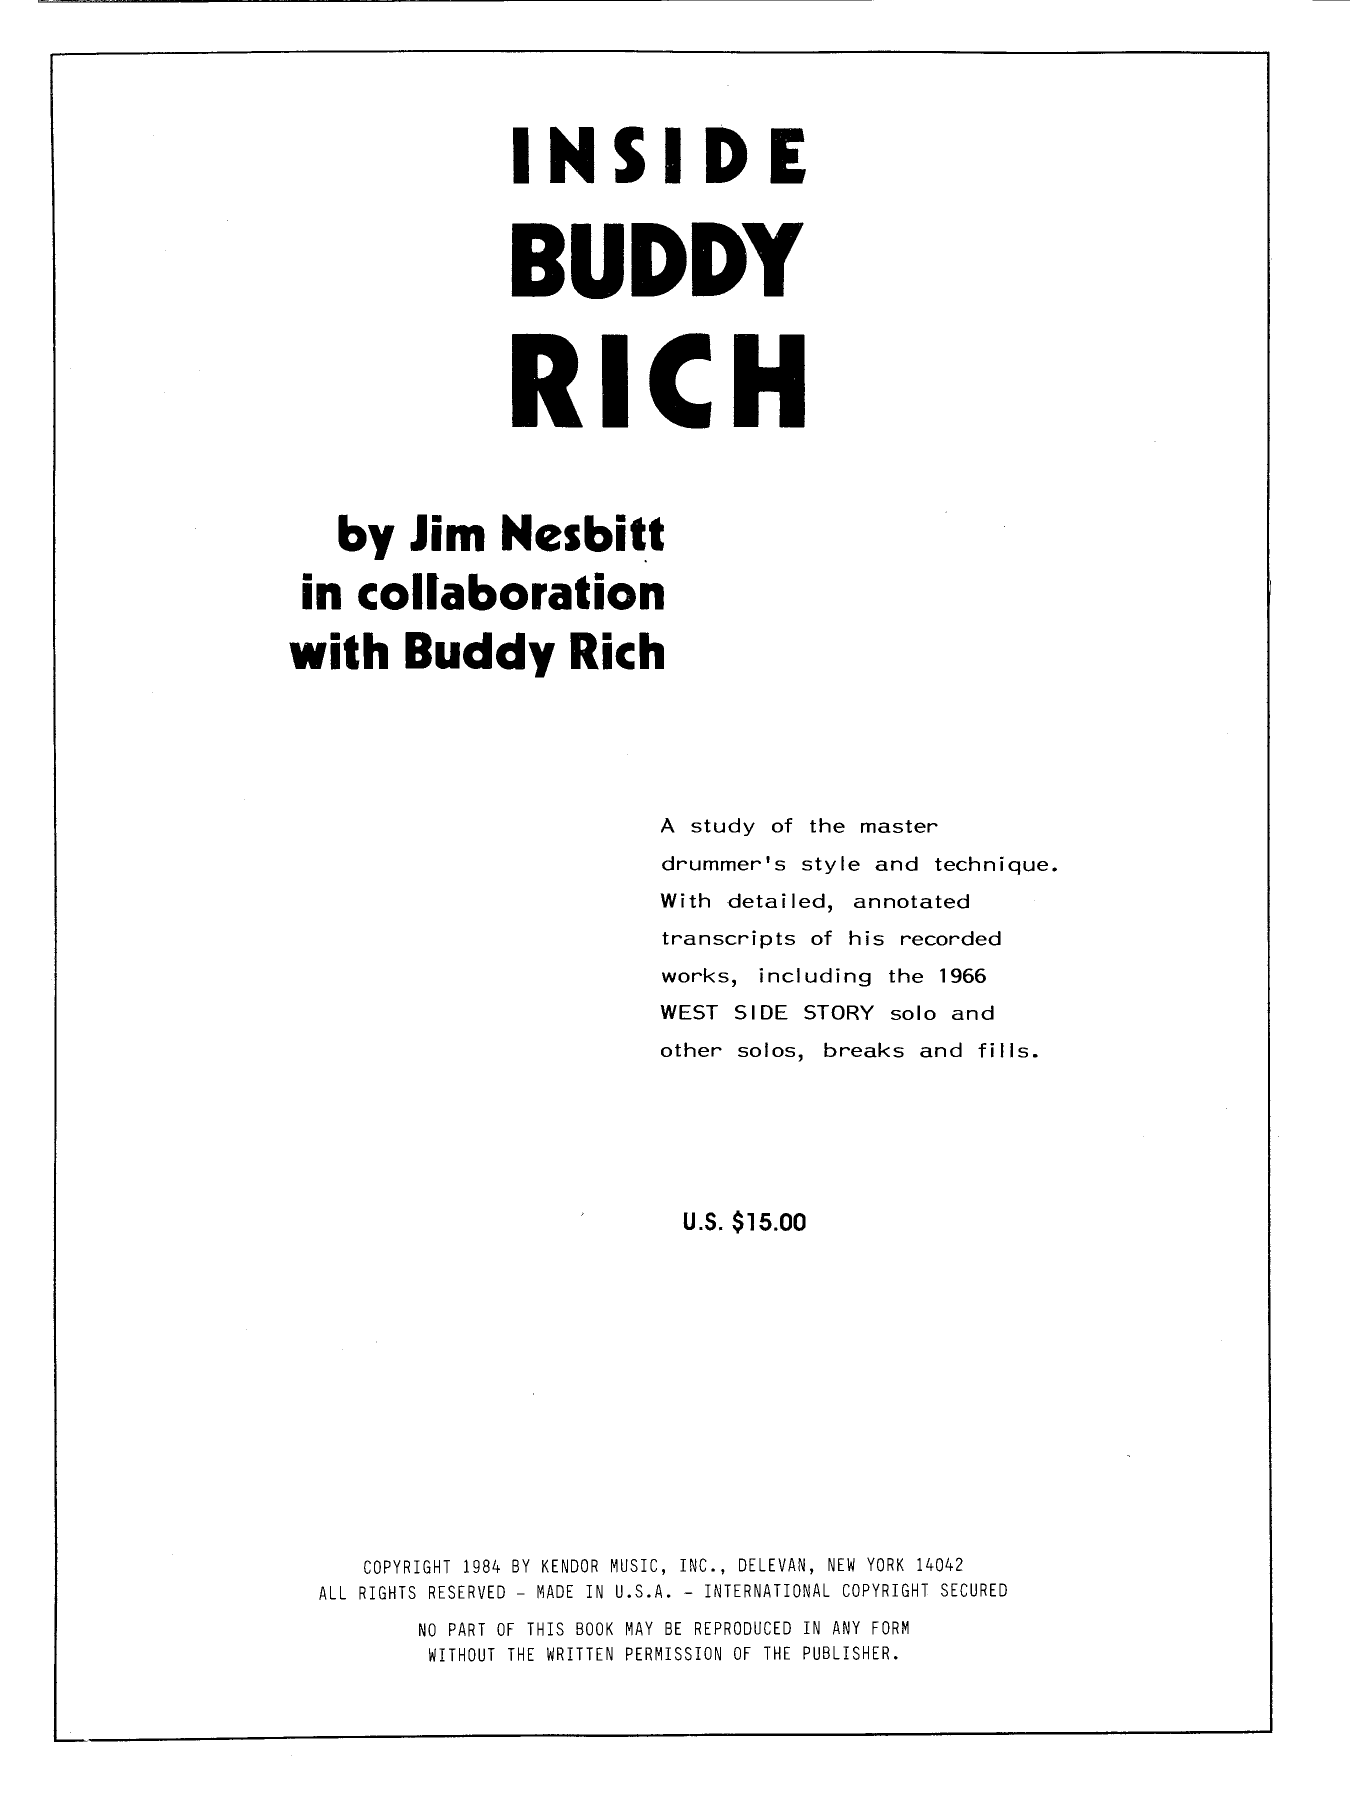 Download Buddy Rich & Jim Nexbitt Inside Buddy Rich Sheet Music